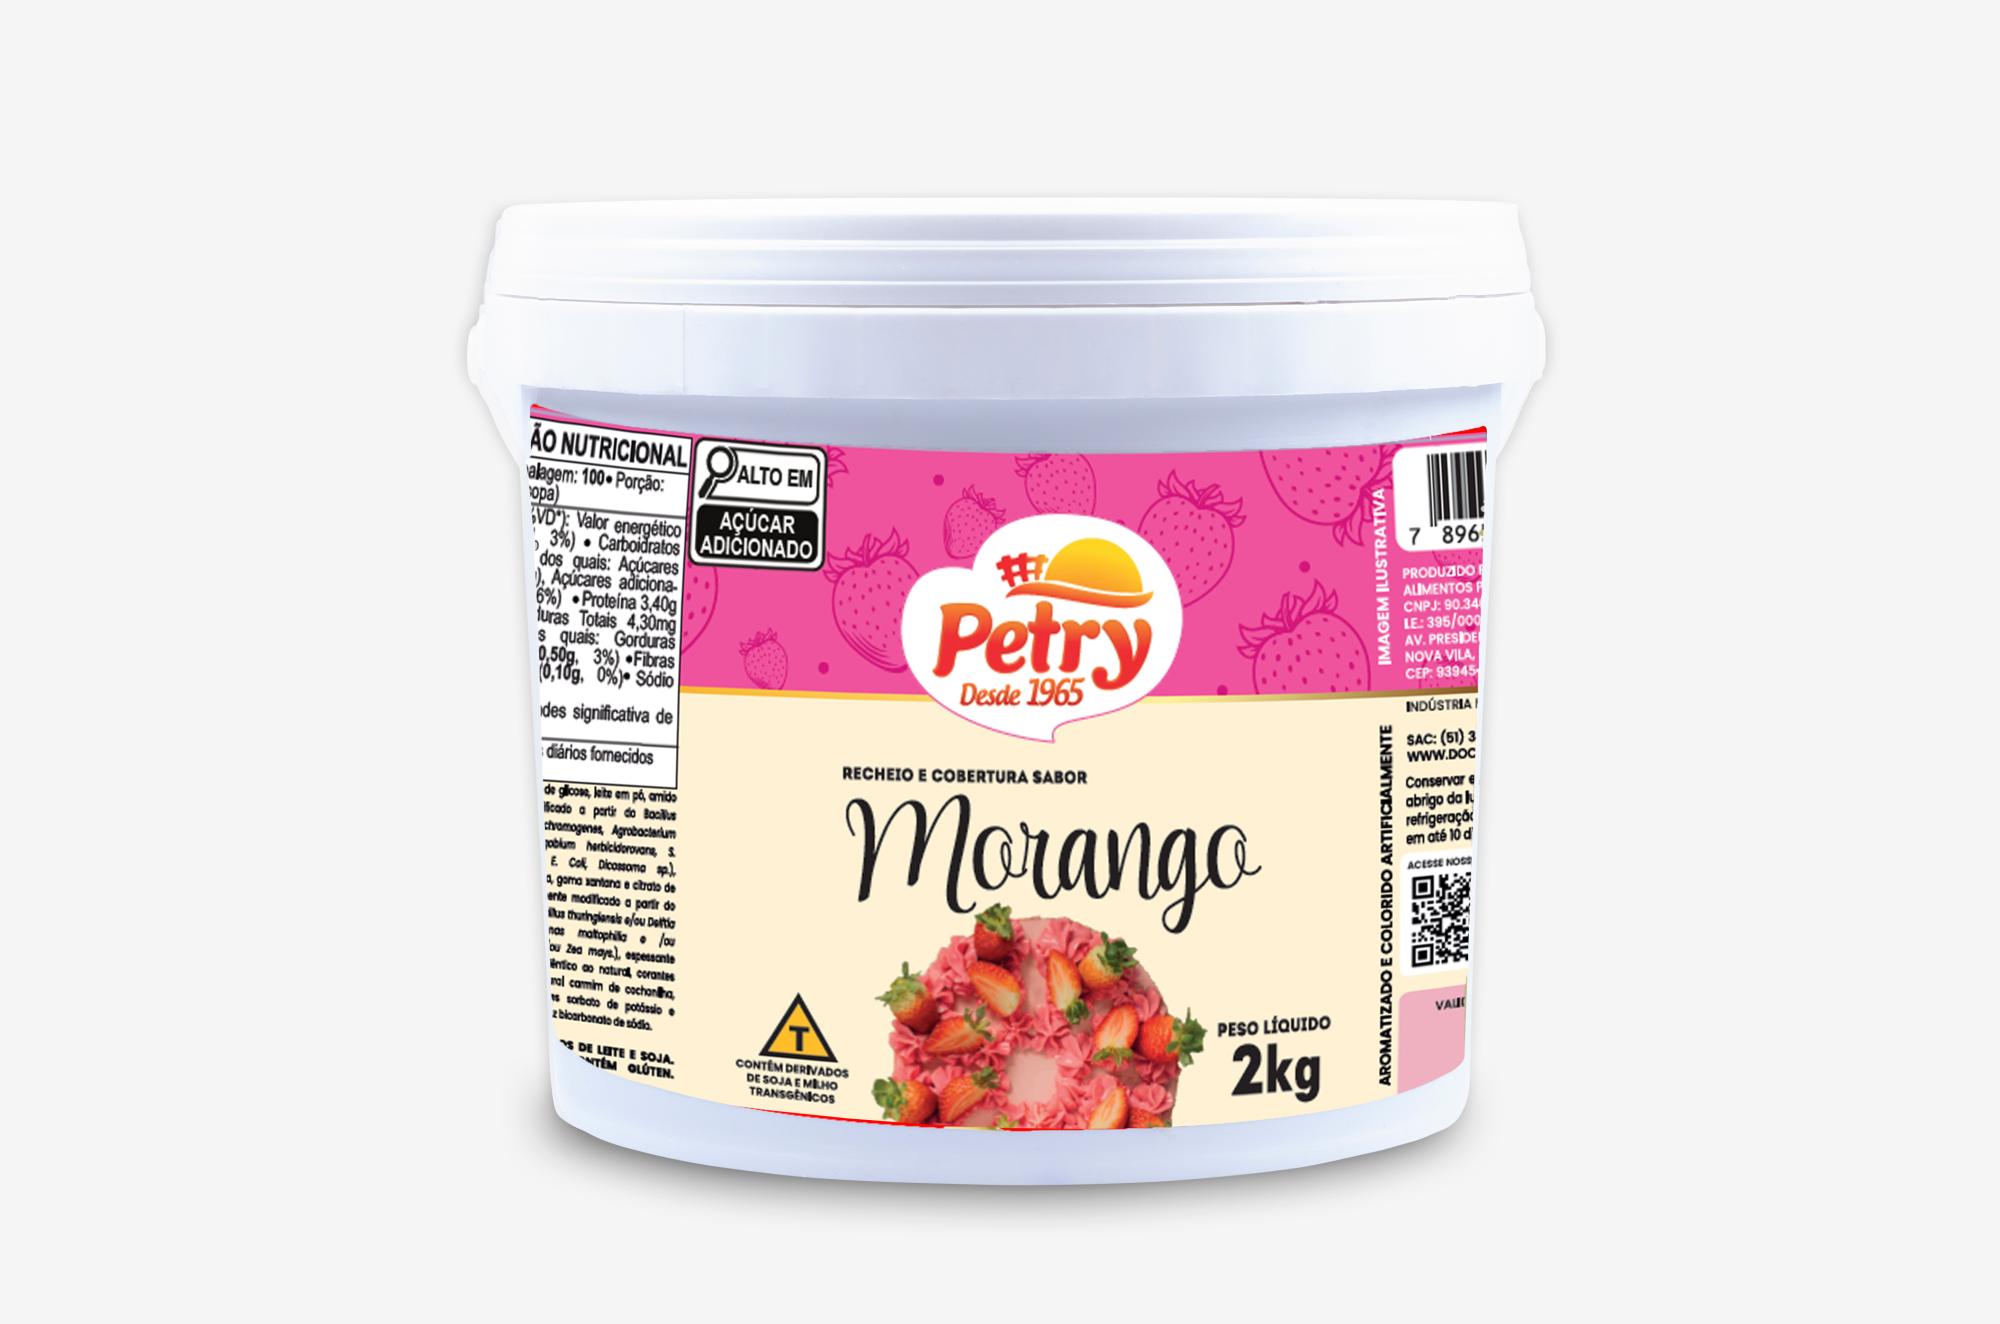 Recheio e cobertura sabor Morango Petry 2kg